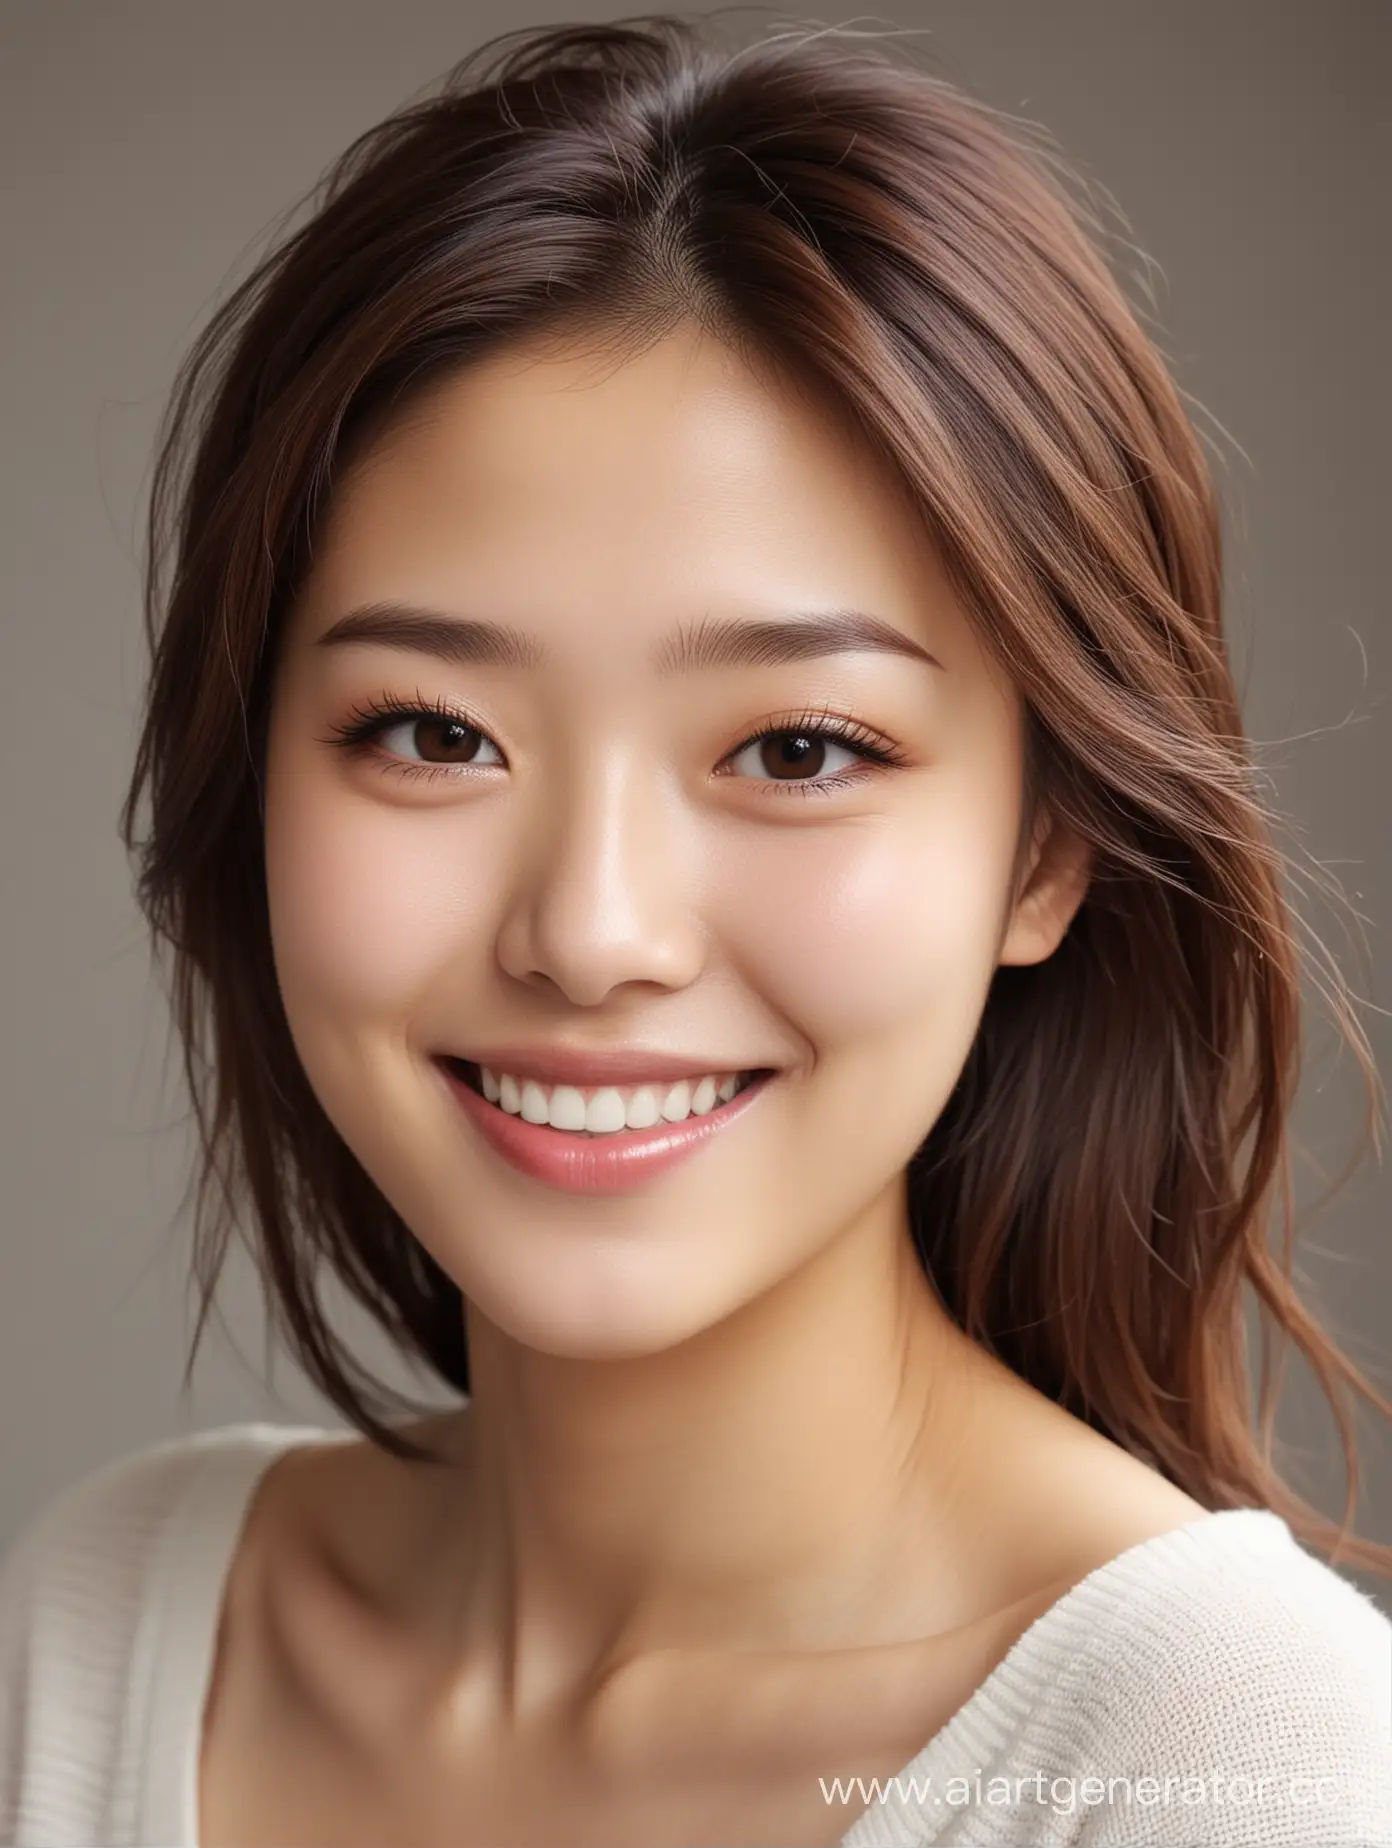 девочка. наполовину кореянка (не сильно выраженные азиатские черты), светлая кожа, коричневые волосы. улыбается, очень красивая улыбка, но не слишком лучезарная
